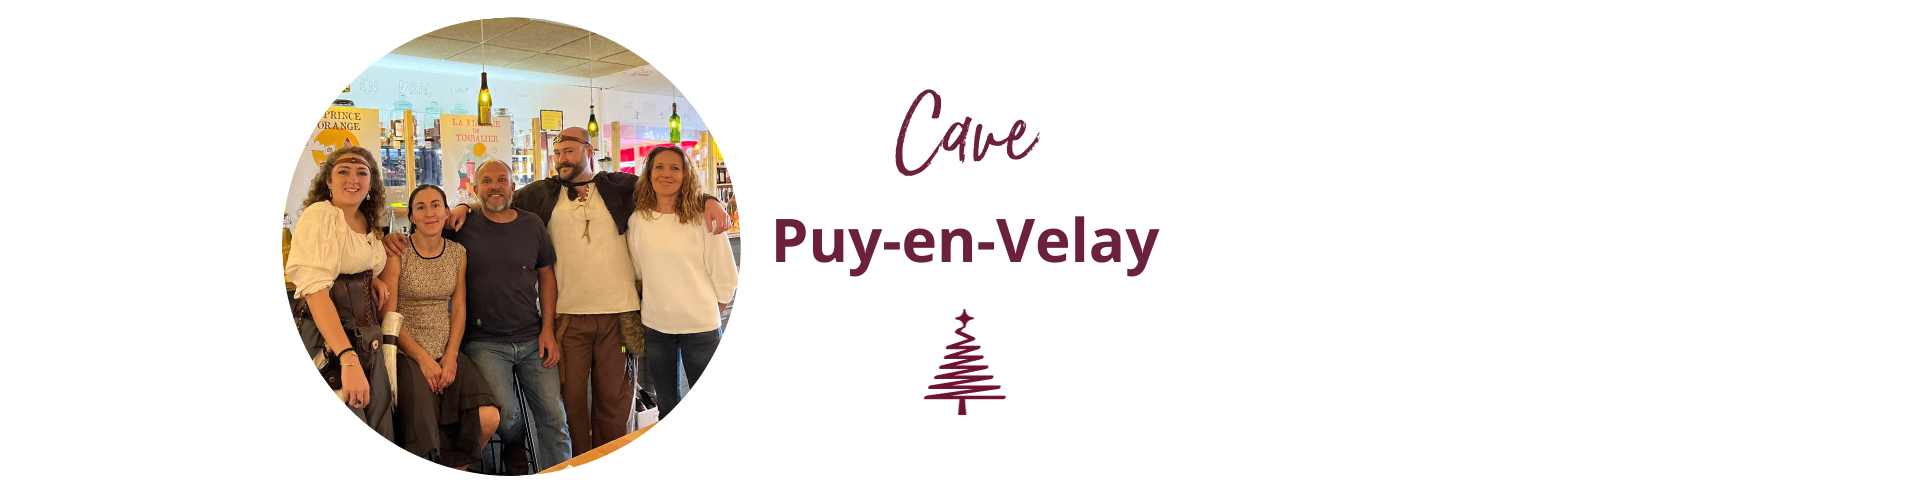 Cave Marcon - Puy-en-Velay 